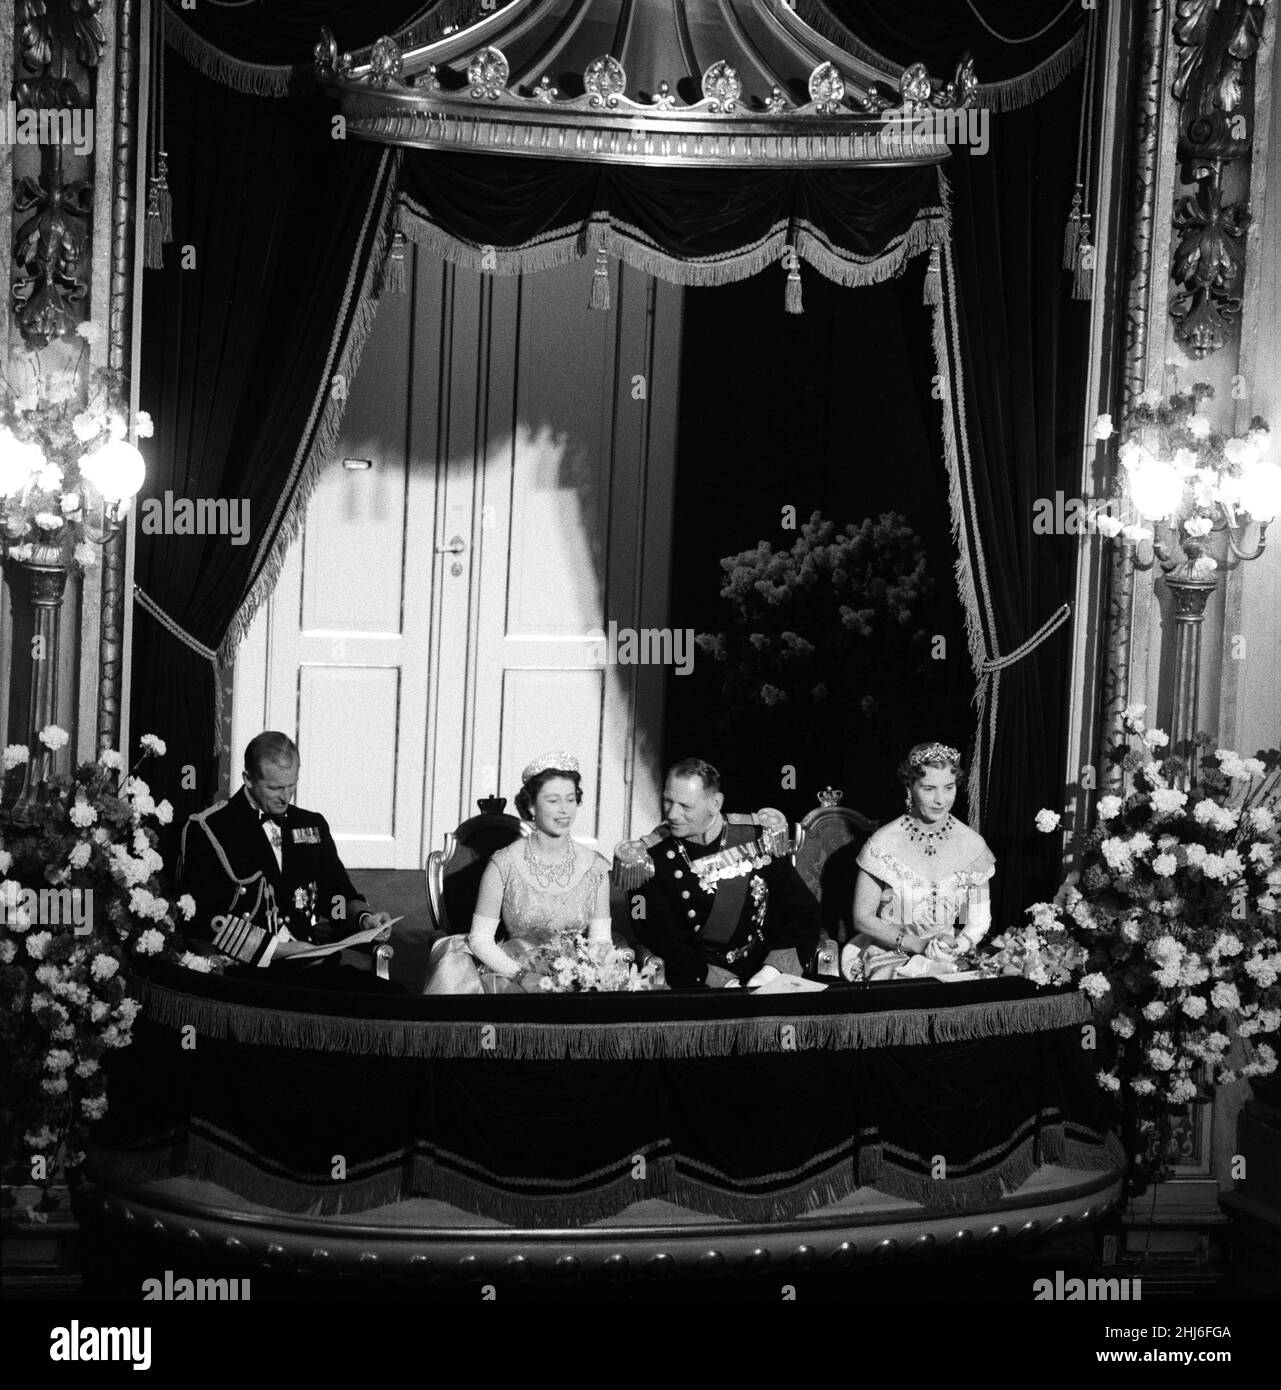 Königin Elizabeth II. Und Prinz Philip, Herzog von Edinburgh, besuchen Dänemark. Im Bild: Prinz Philip, Königin Elisabeth II., König Frederik und Königin Ingrid von Dänemark in ihrer Box bei der Galavorstellung im Königlichen Theater in Kopenhagen. 23rd Mai 1957. Stockfoto